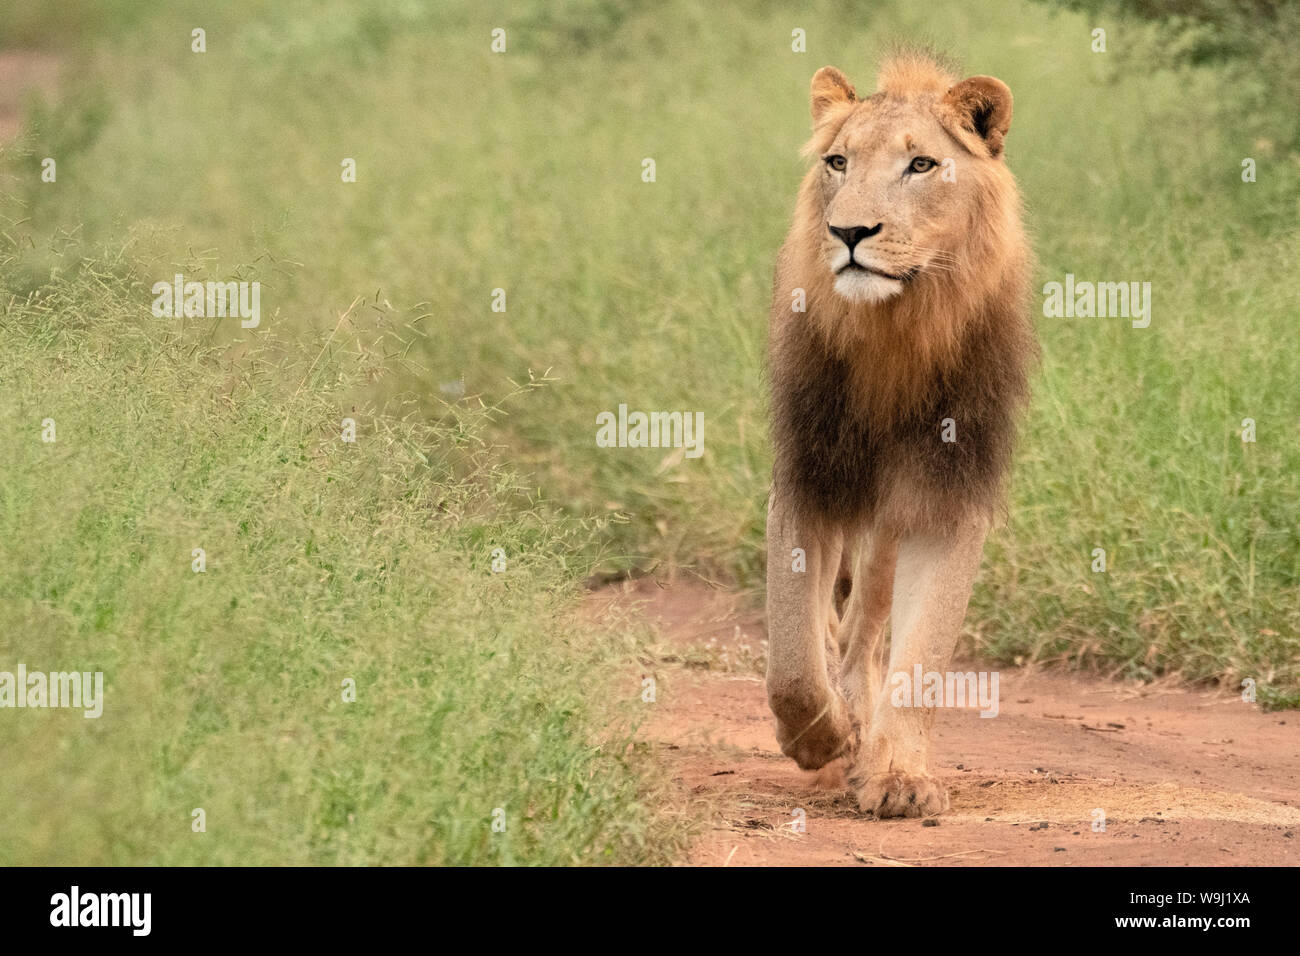 África, África meridional, Swazilandia, el Parque Nacional Hlane, Panthera leo, león macho, 30074487 *** *** título Local de África, África meridional, Swazilandia, Foto de stock